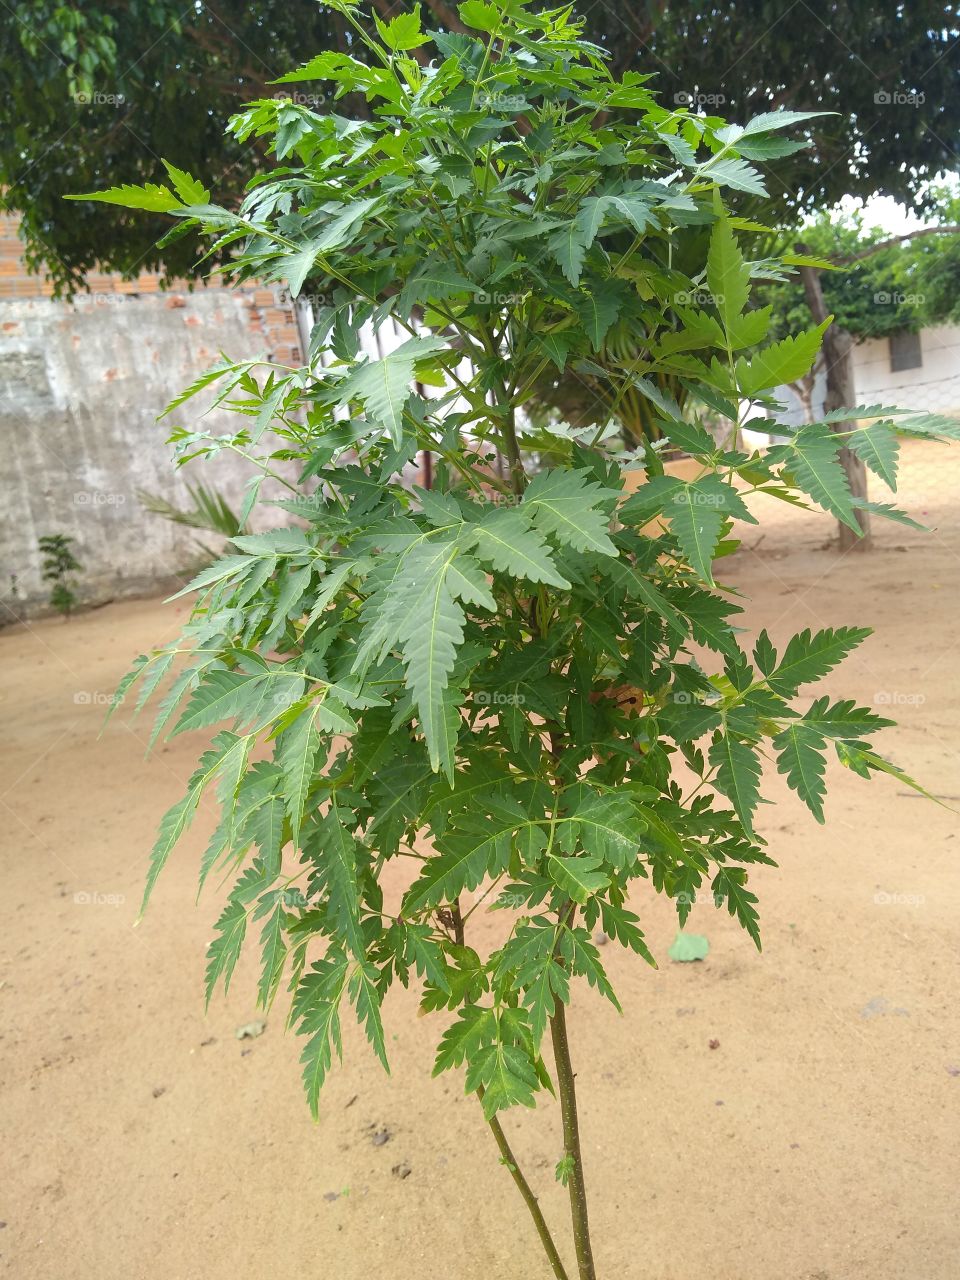 planta neem (ou nim) conhecida cientificamente como Azadirachta indica, é uma árvore do sudeste da Ásia e do subcontinente indiano. É uma árvore de clima tropical, que pode ser cultivada em regiões quentes e solos bem drenados; ela é resistente à seca, tem crescimento rápido, copa densa e pode alcançar até 20m de altura